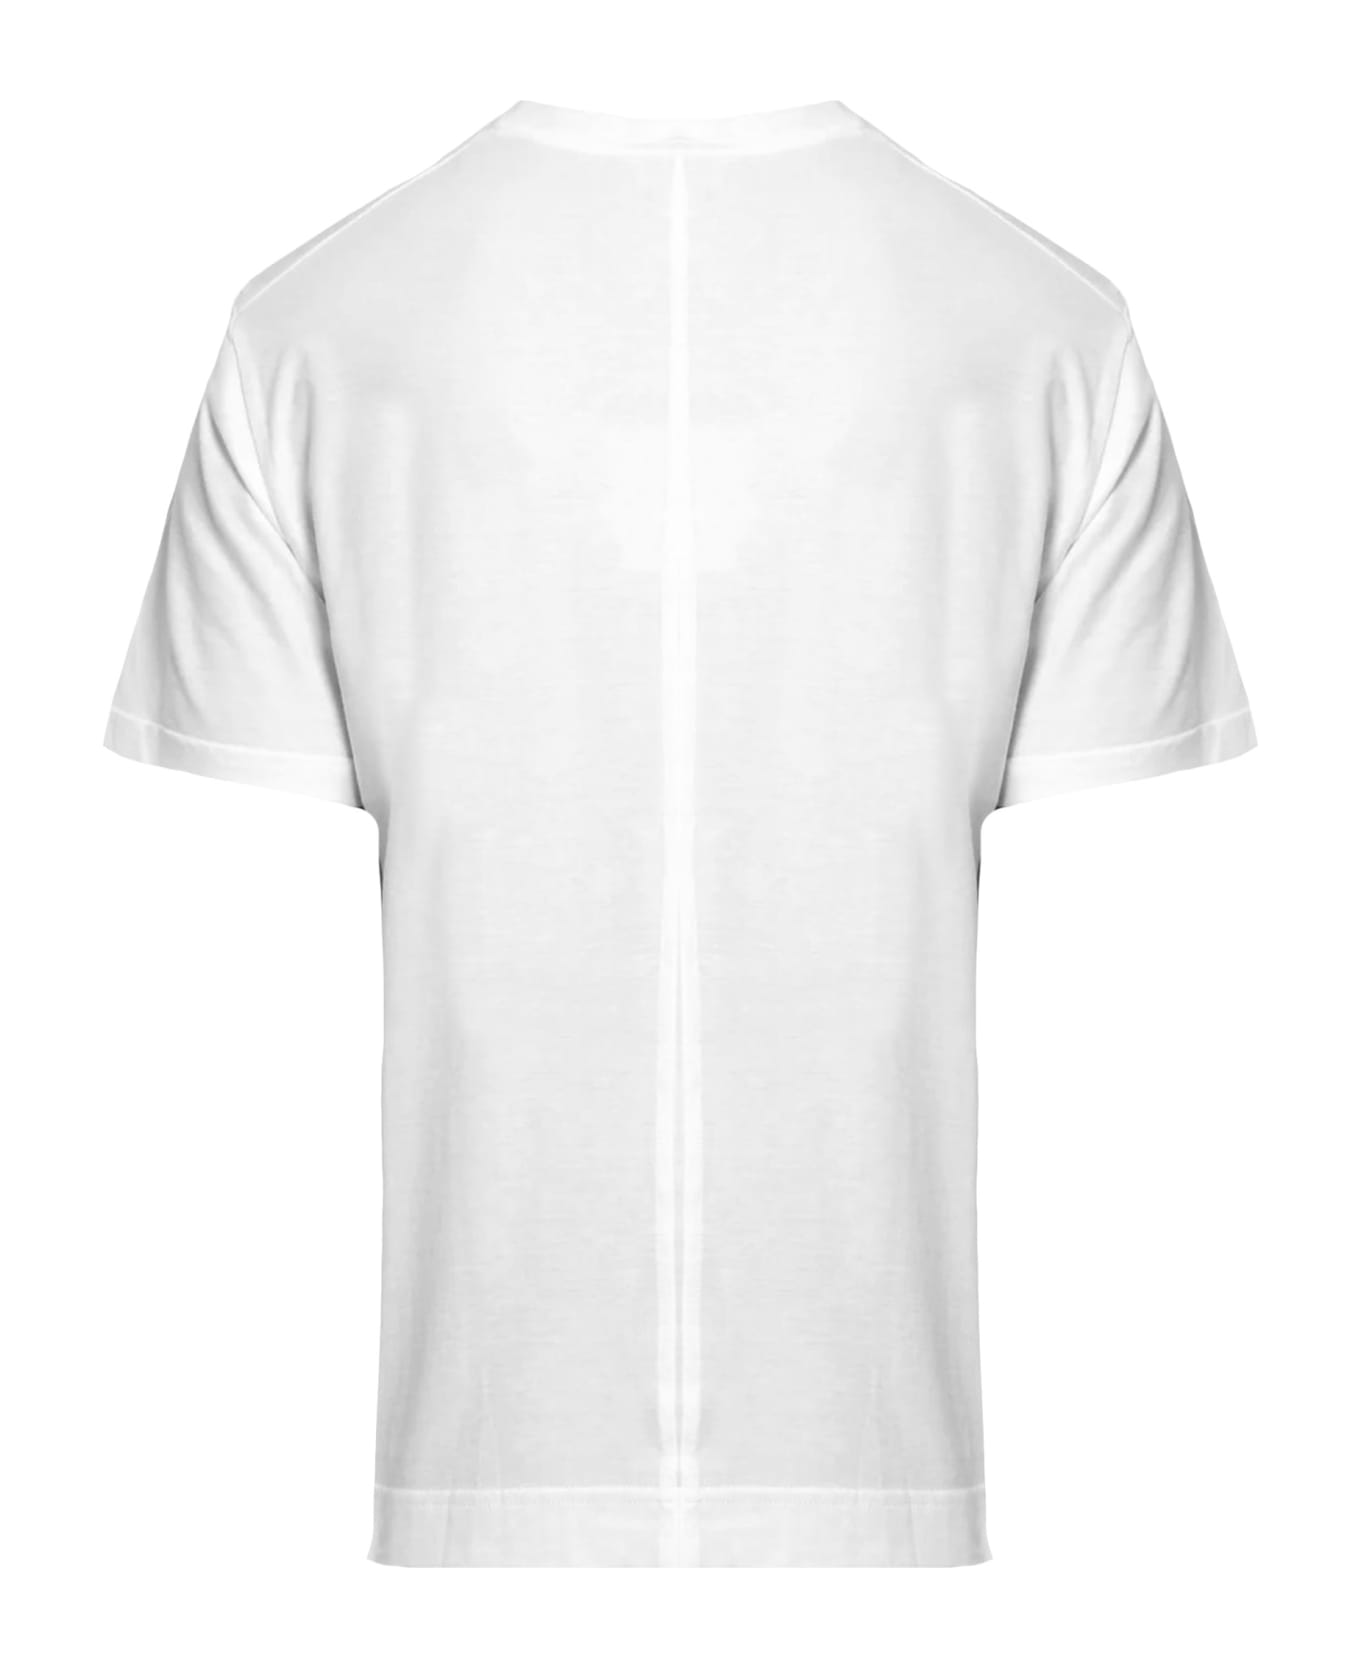 Paolo Pecora White Cotton T-shirt - White シャツ